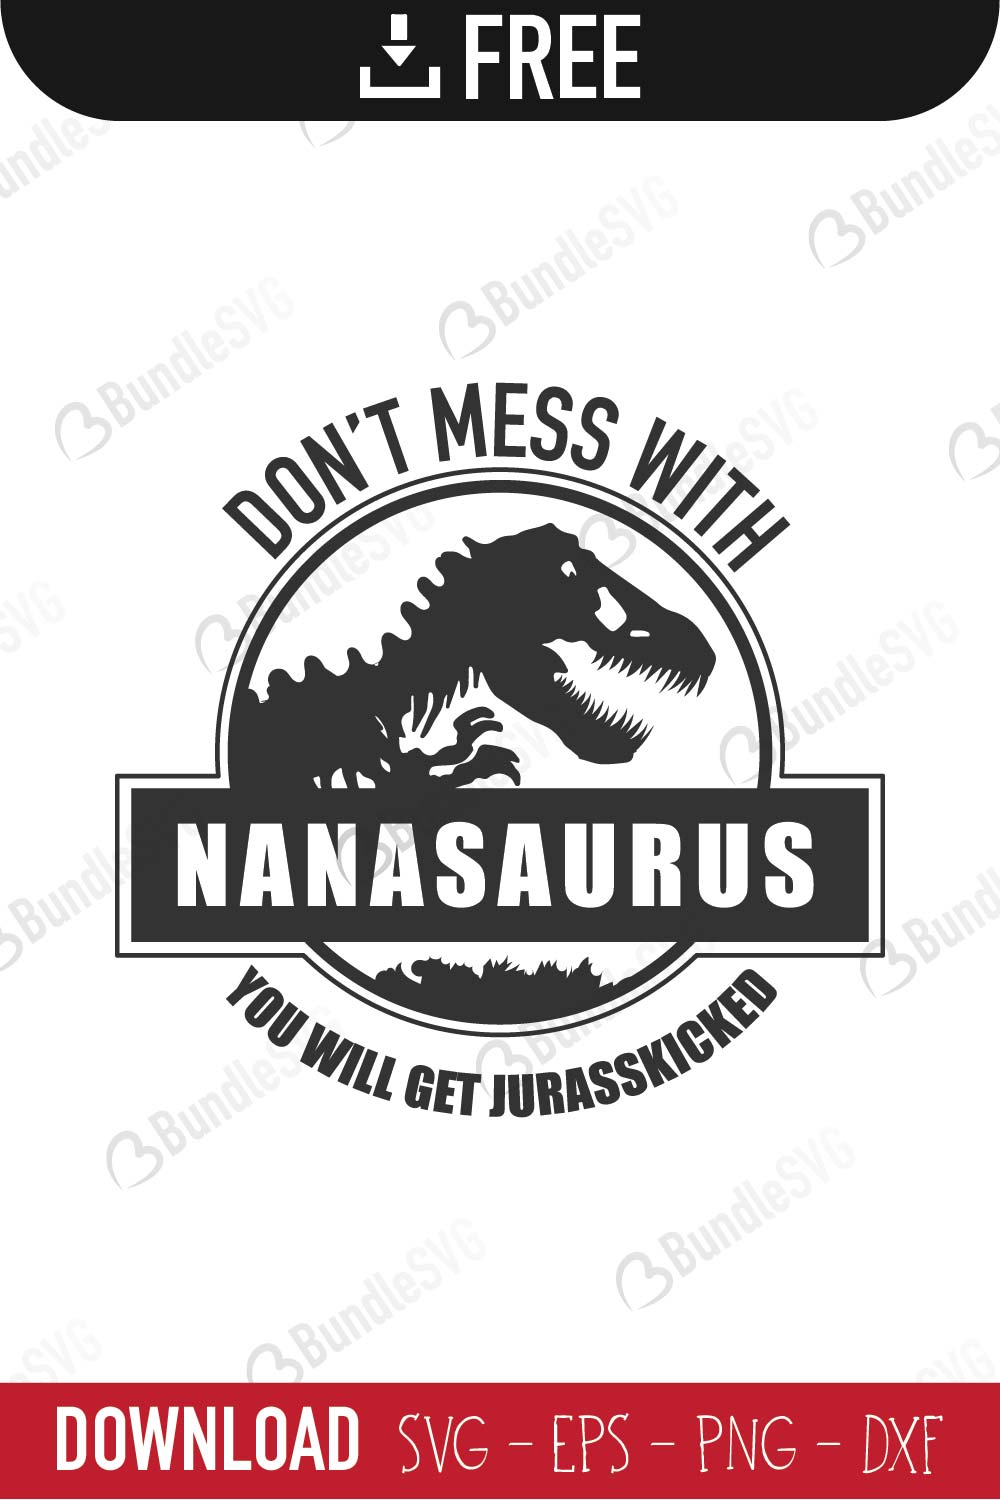 Download Nanasaurus Svg Cut Files Free Download Bundlesvg